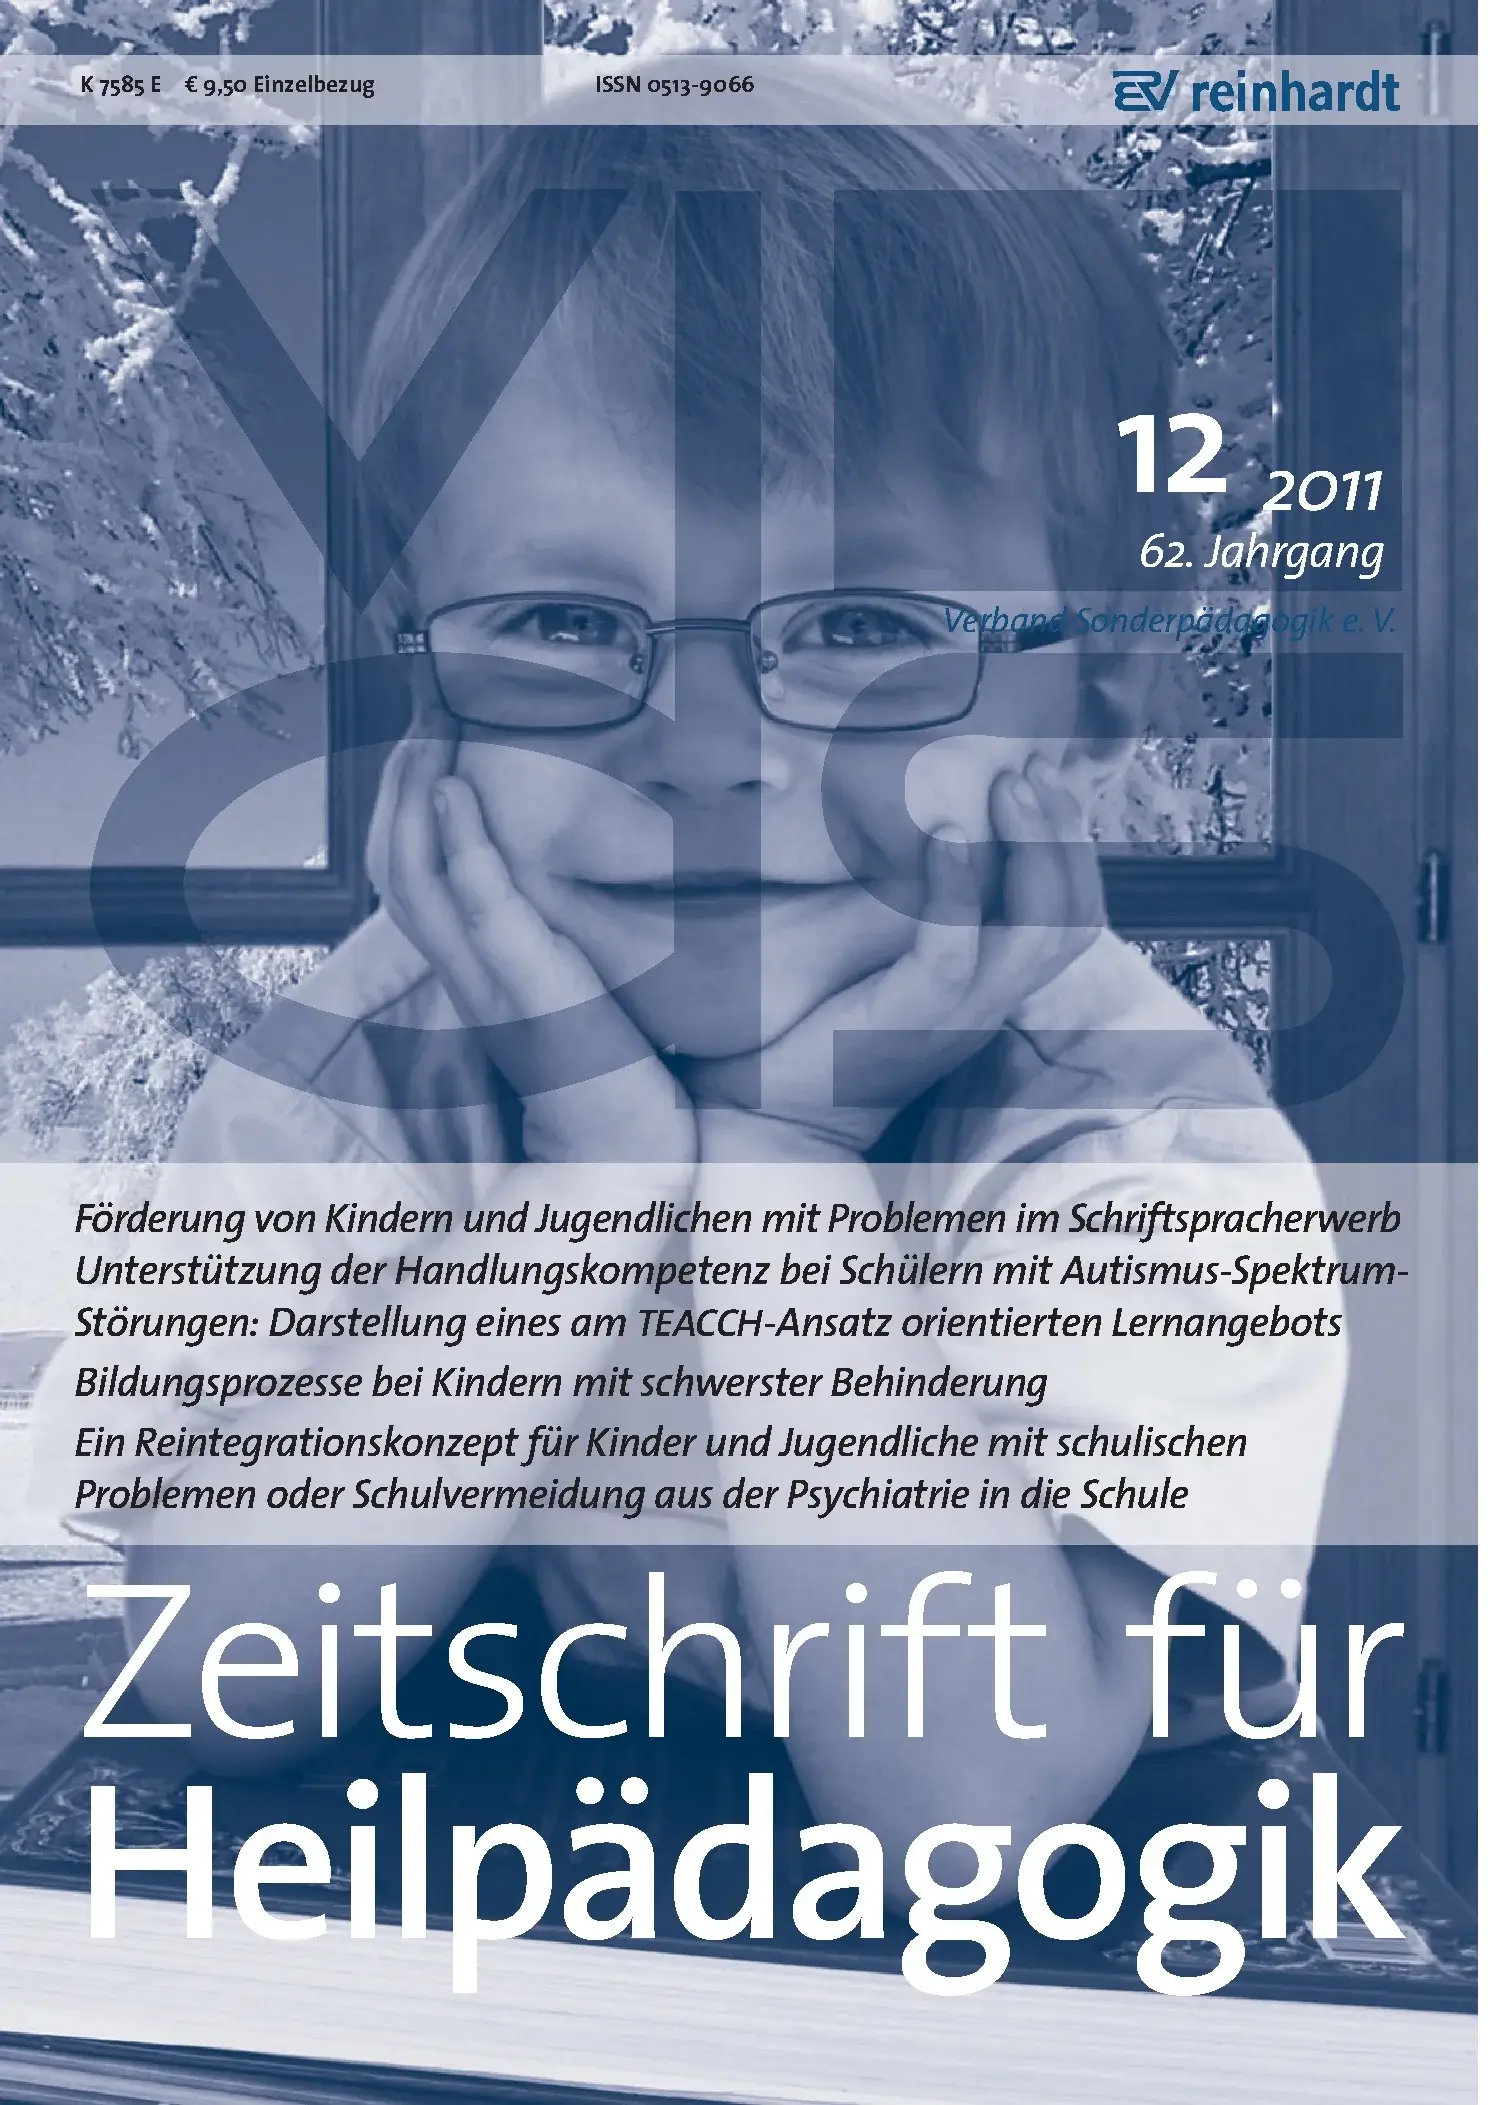 Zeitschrift für Heilpädagogik Cover 12.2011